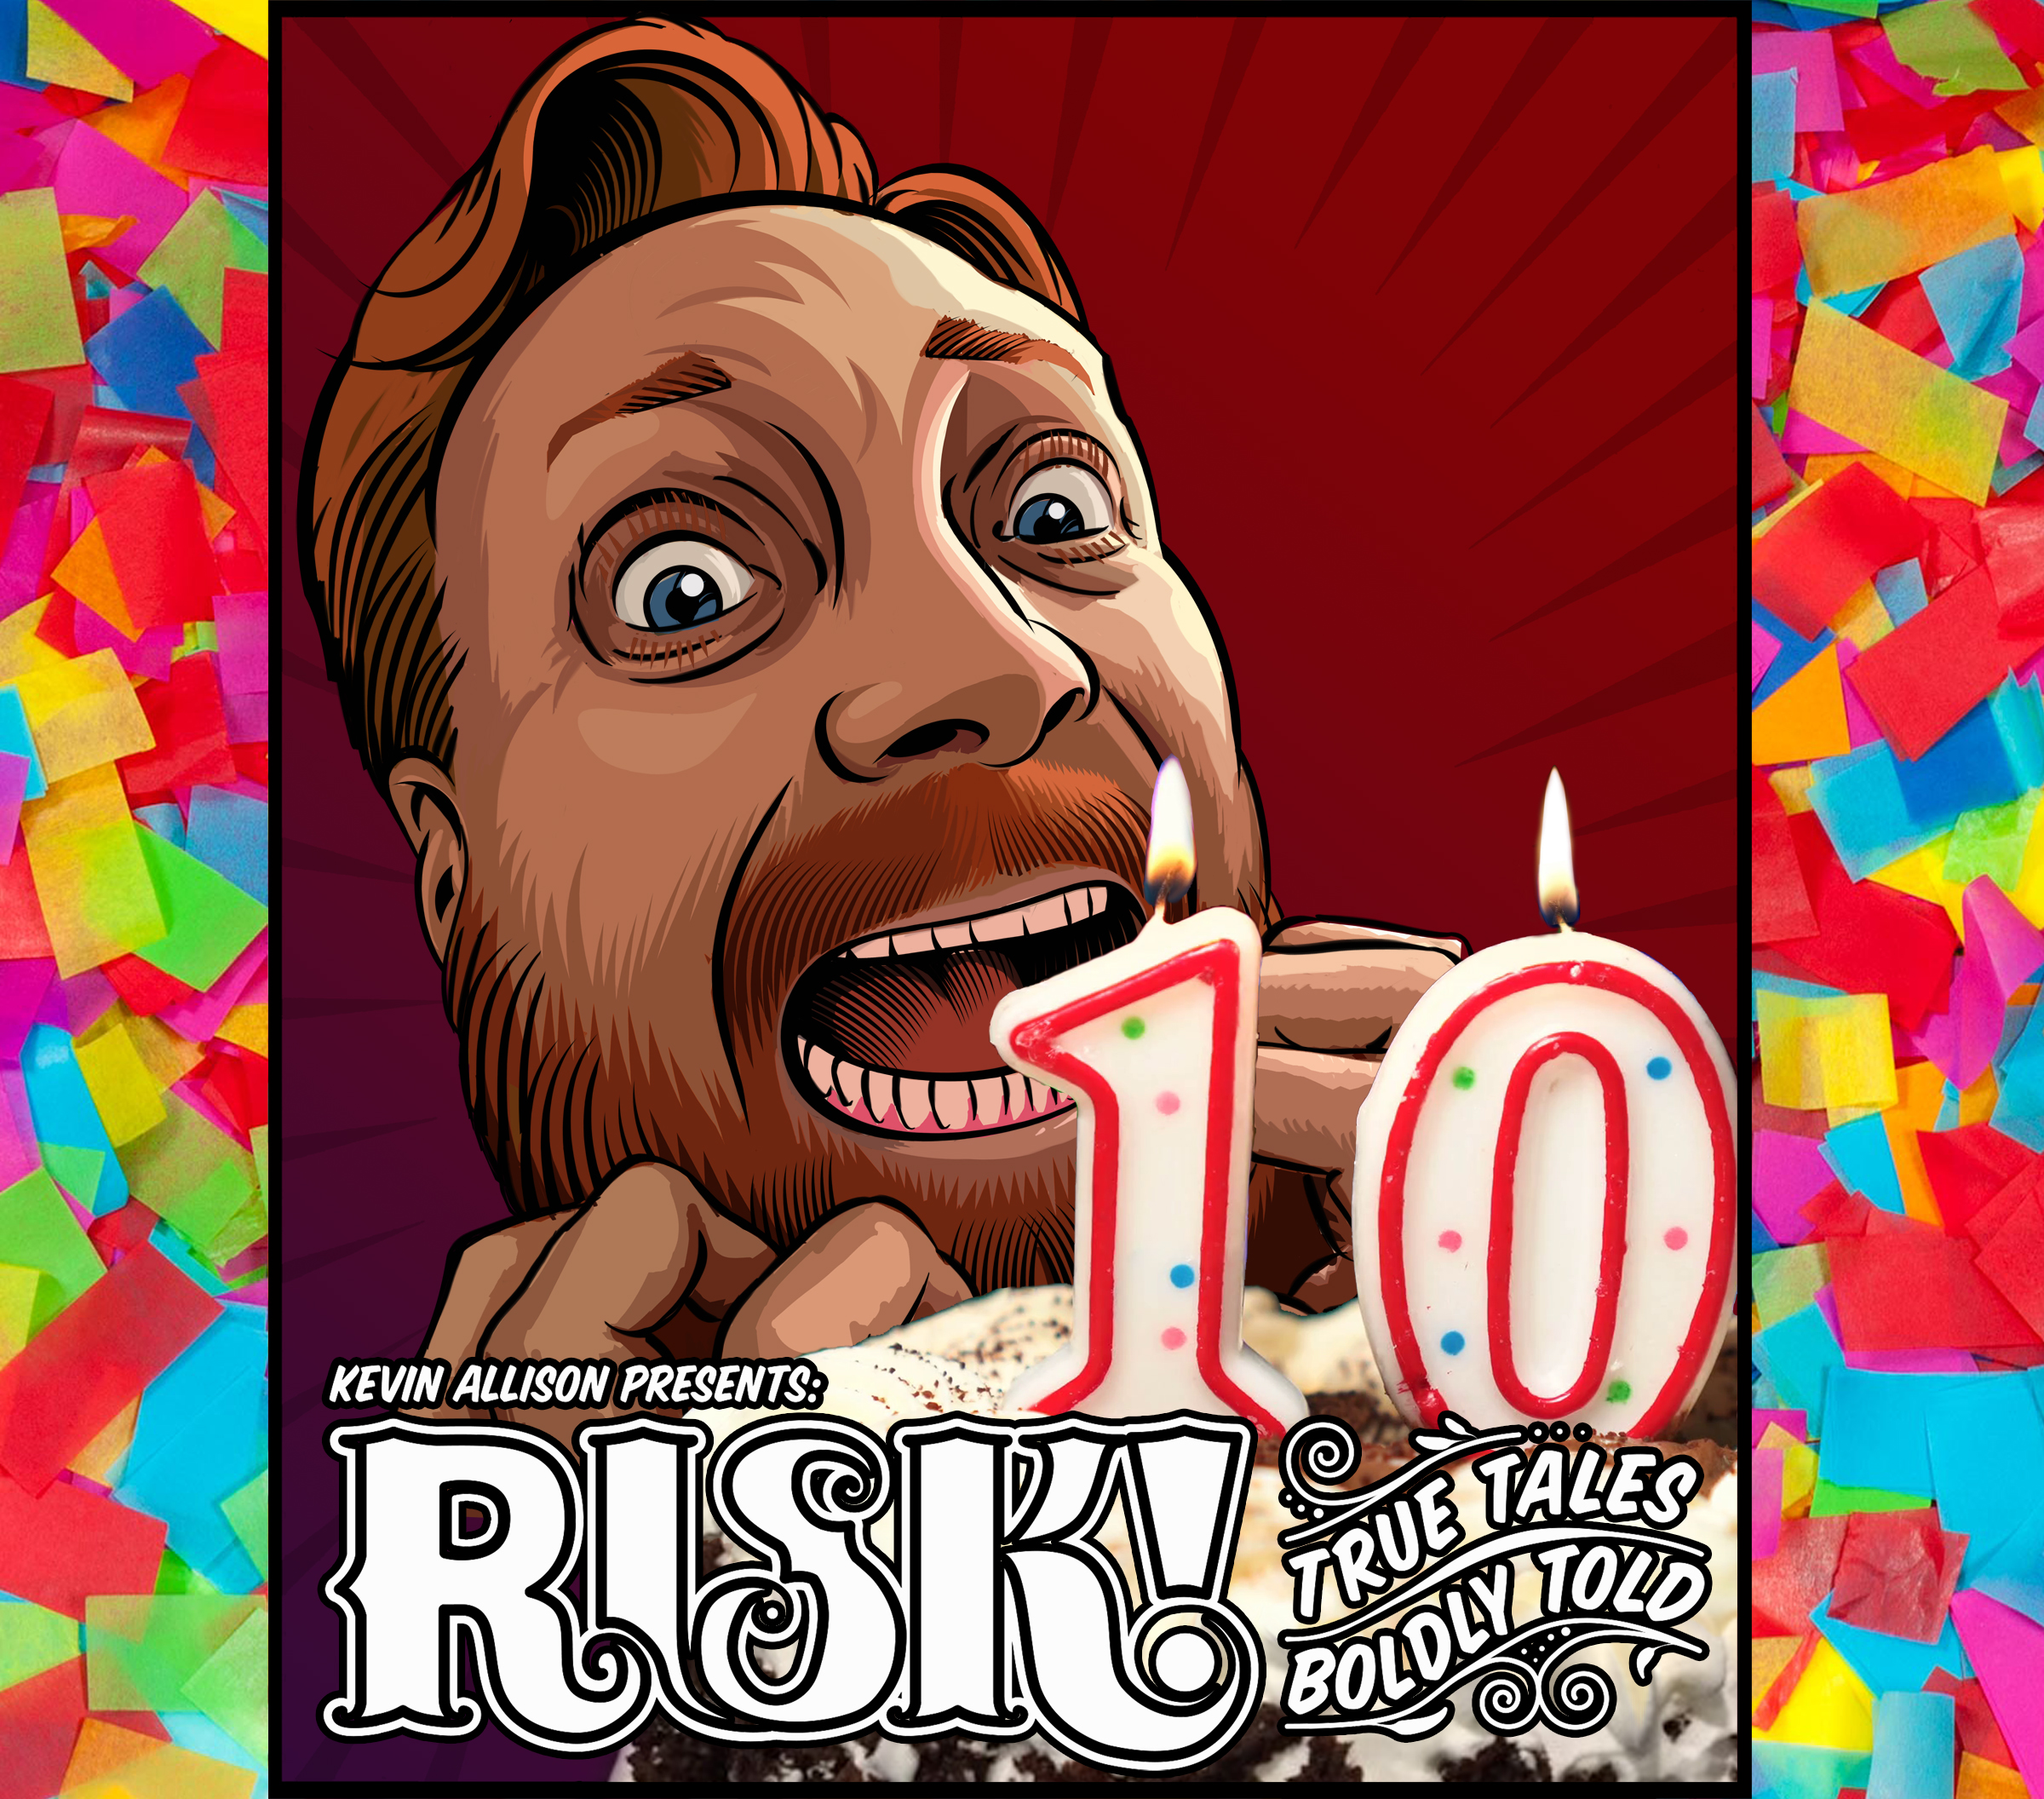 RISK! Podcast